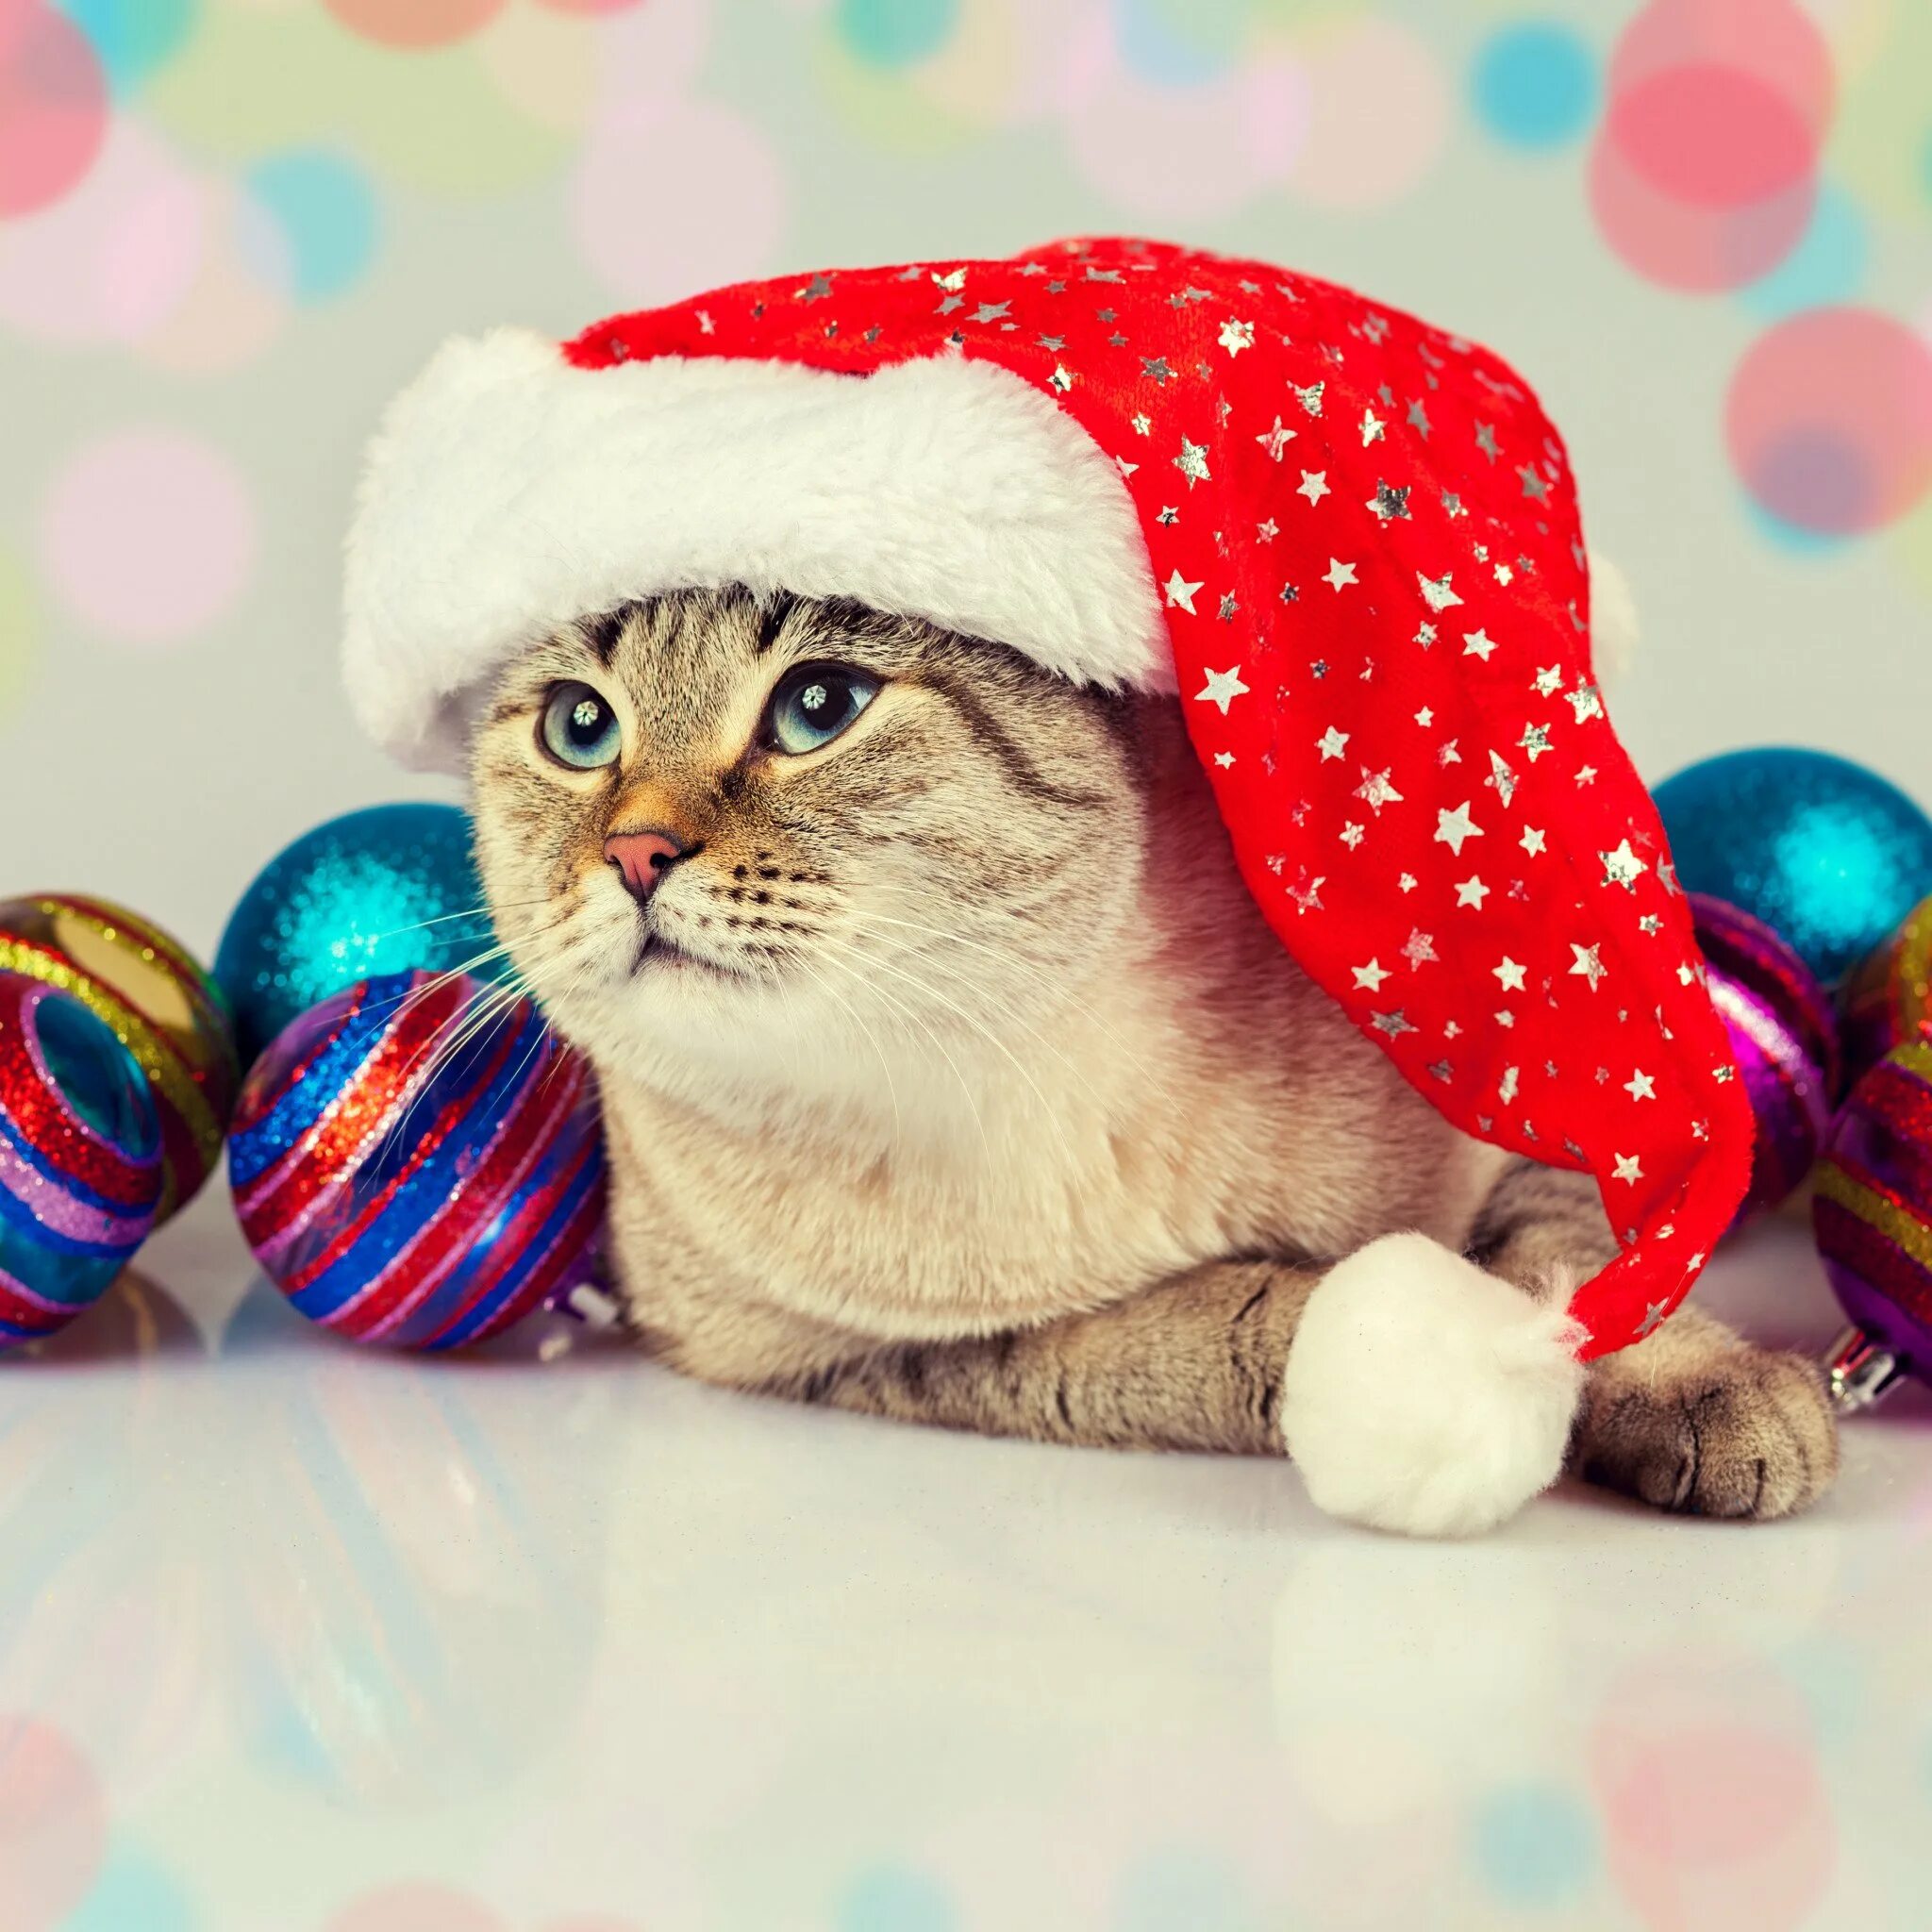 Включай про новый год. Новогодний котик. Котик в новогодней шапке. Новогоднего настроения открытки. Хорошего новогоднего настроения.